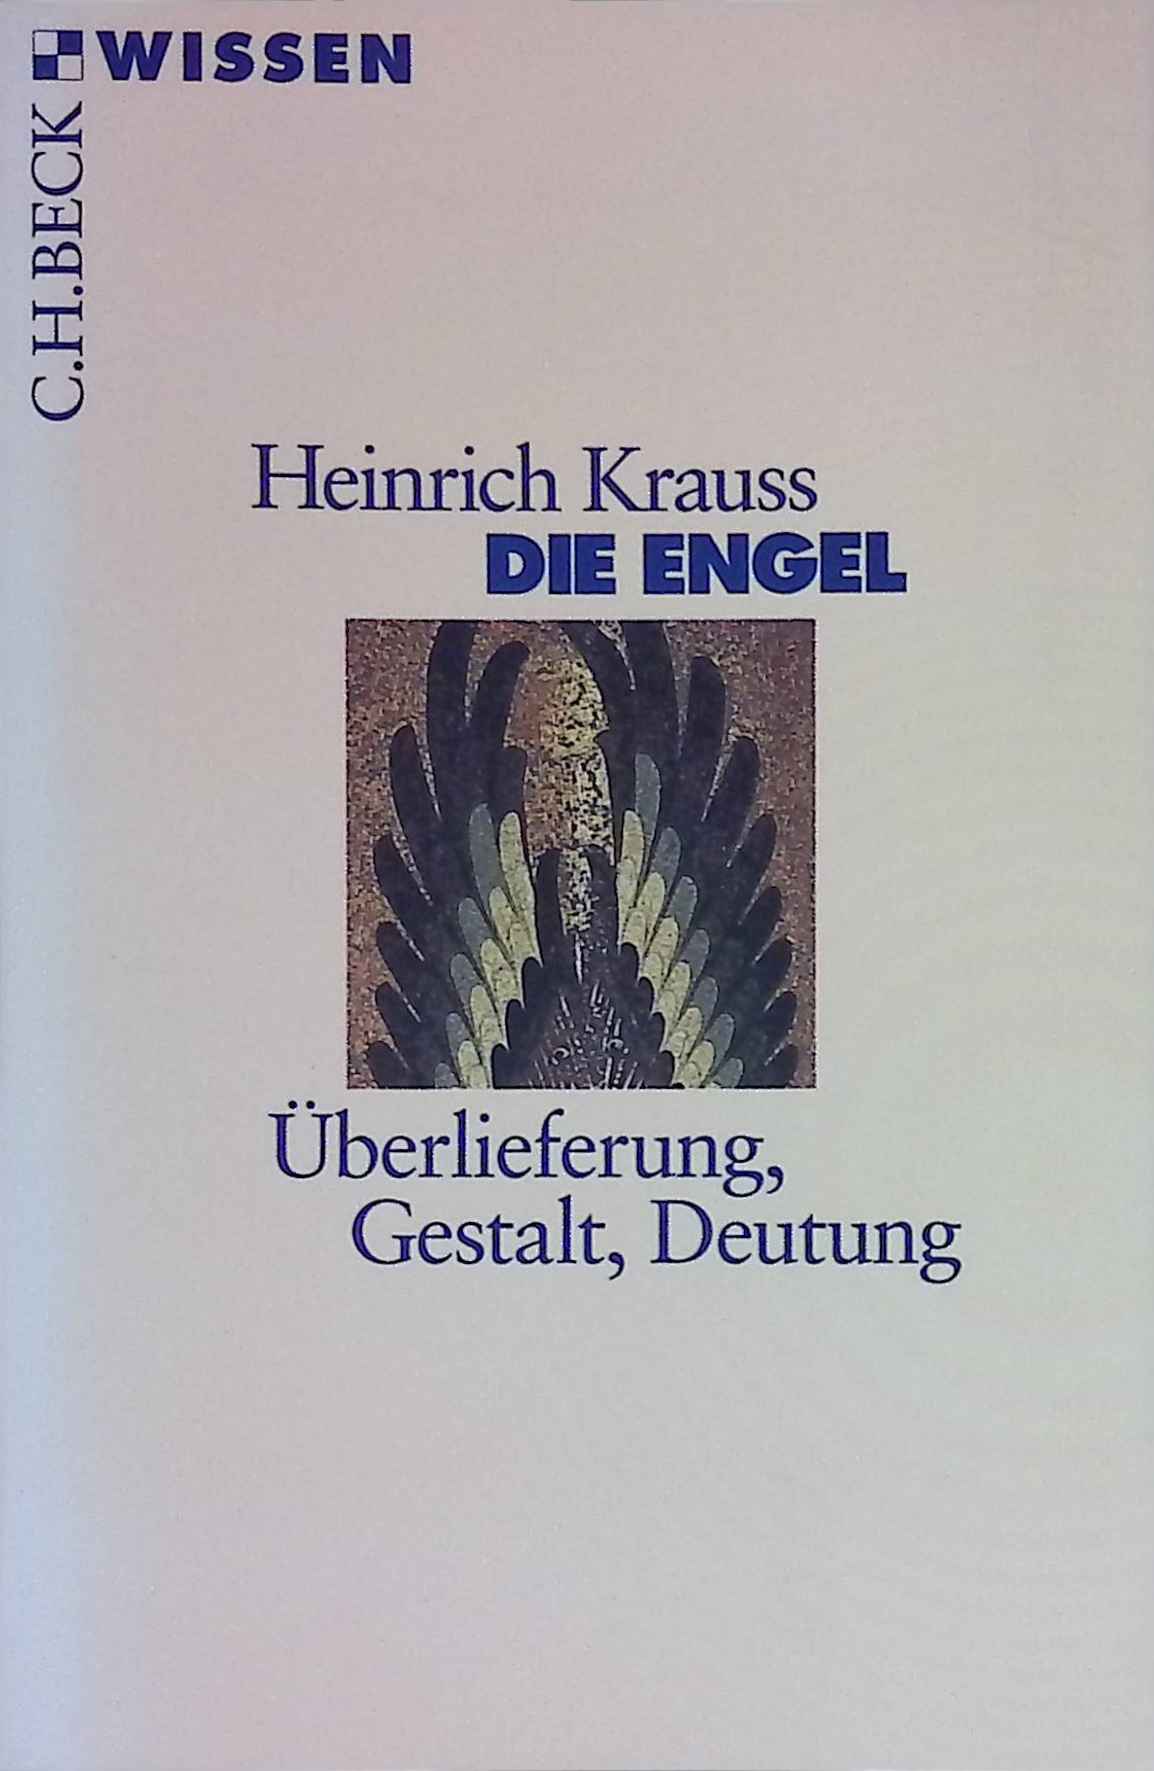 Die Engel : Überlieferung, Gestalt, Deutung. (Nr. 2135) C. H. Beck Wissen - Krauss, Heinrich